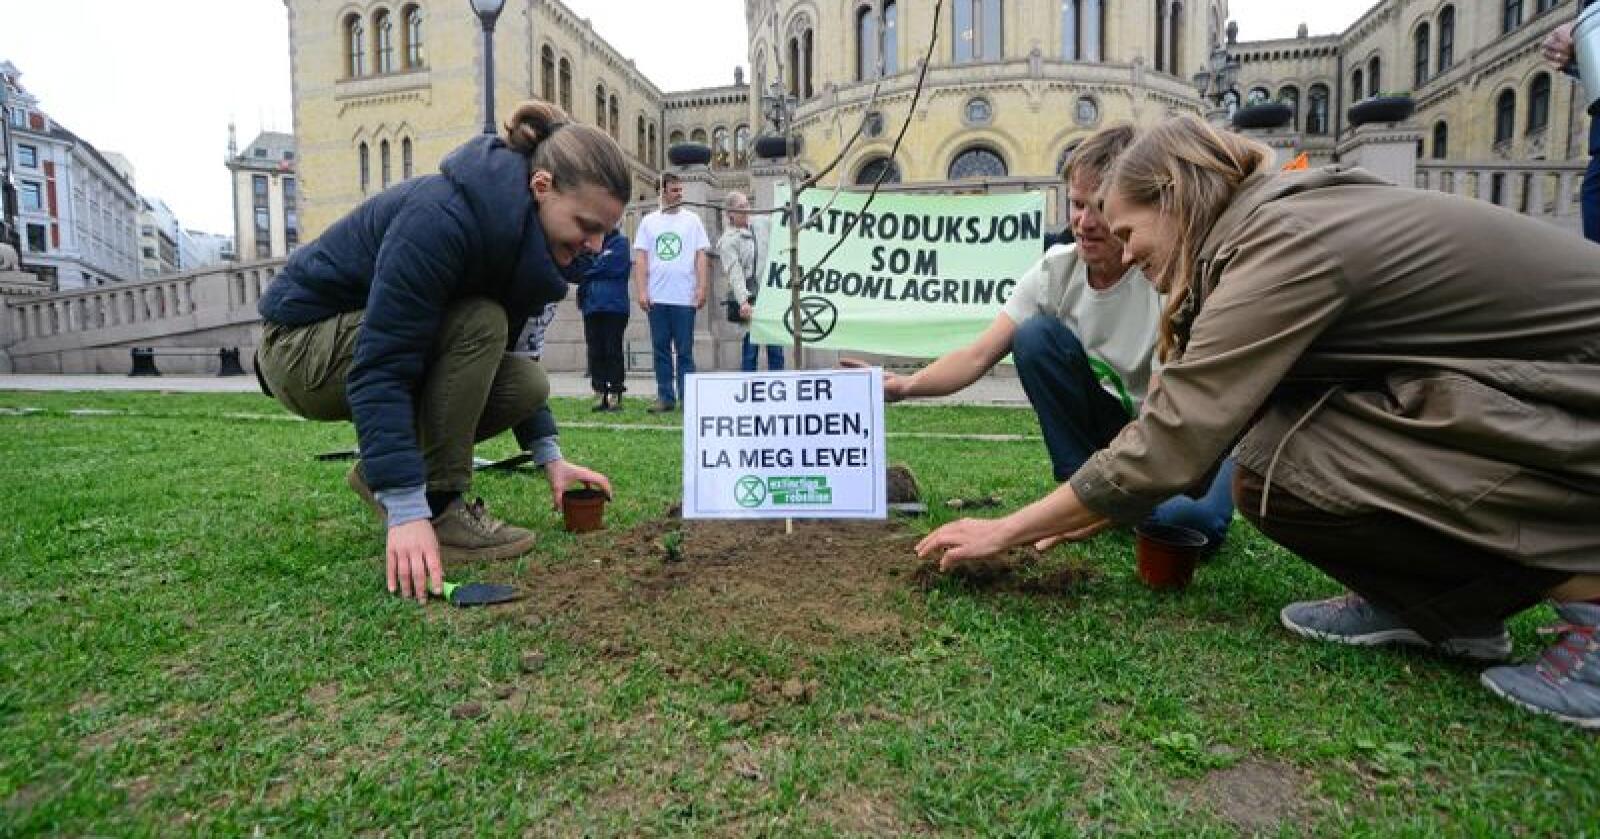 Treet ble plantet uten tilatelse, men demonstrantene ble ikke stanset under plantingen. Foto: Siri Juell Rasmussen